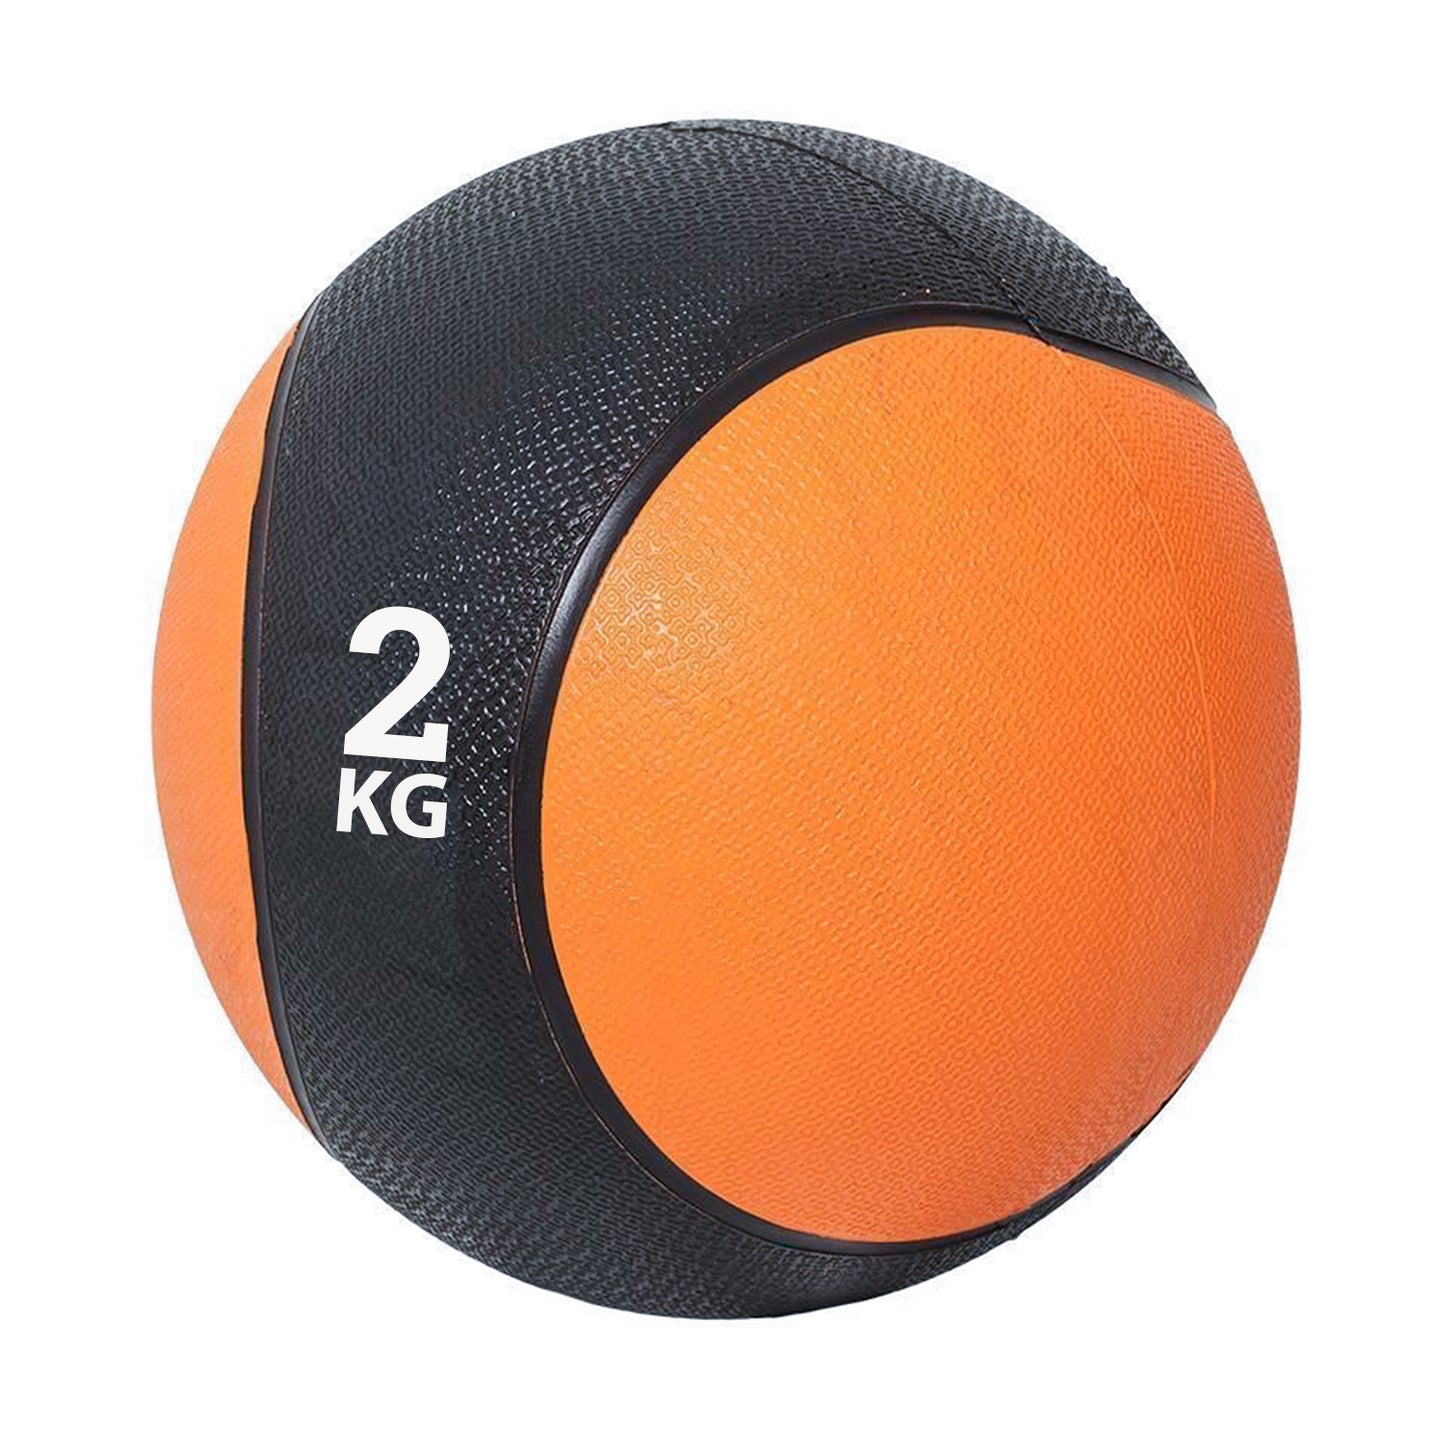 كرة طبية من المطاط لاعادة التأهيل و اللياقة البدنية - لون اسود و برتقالي - وزن 2 كيلو جرام